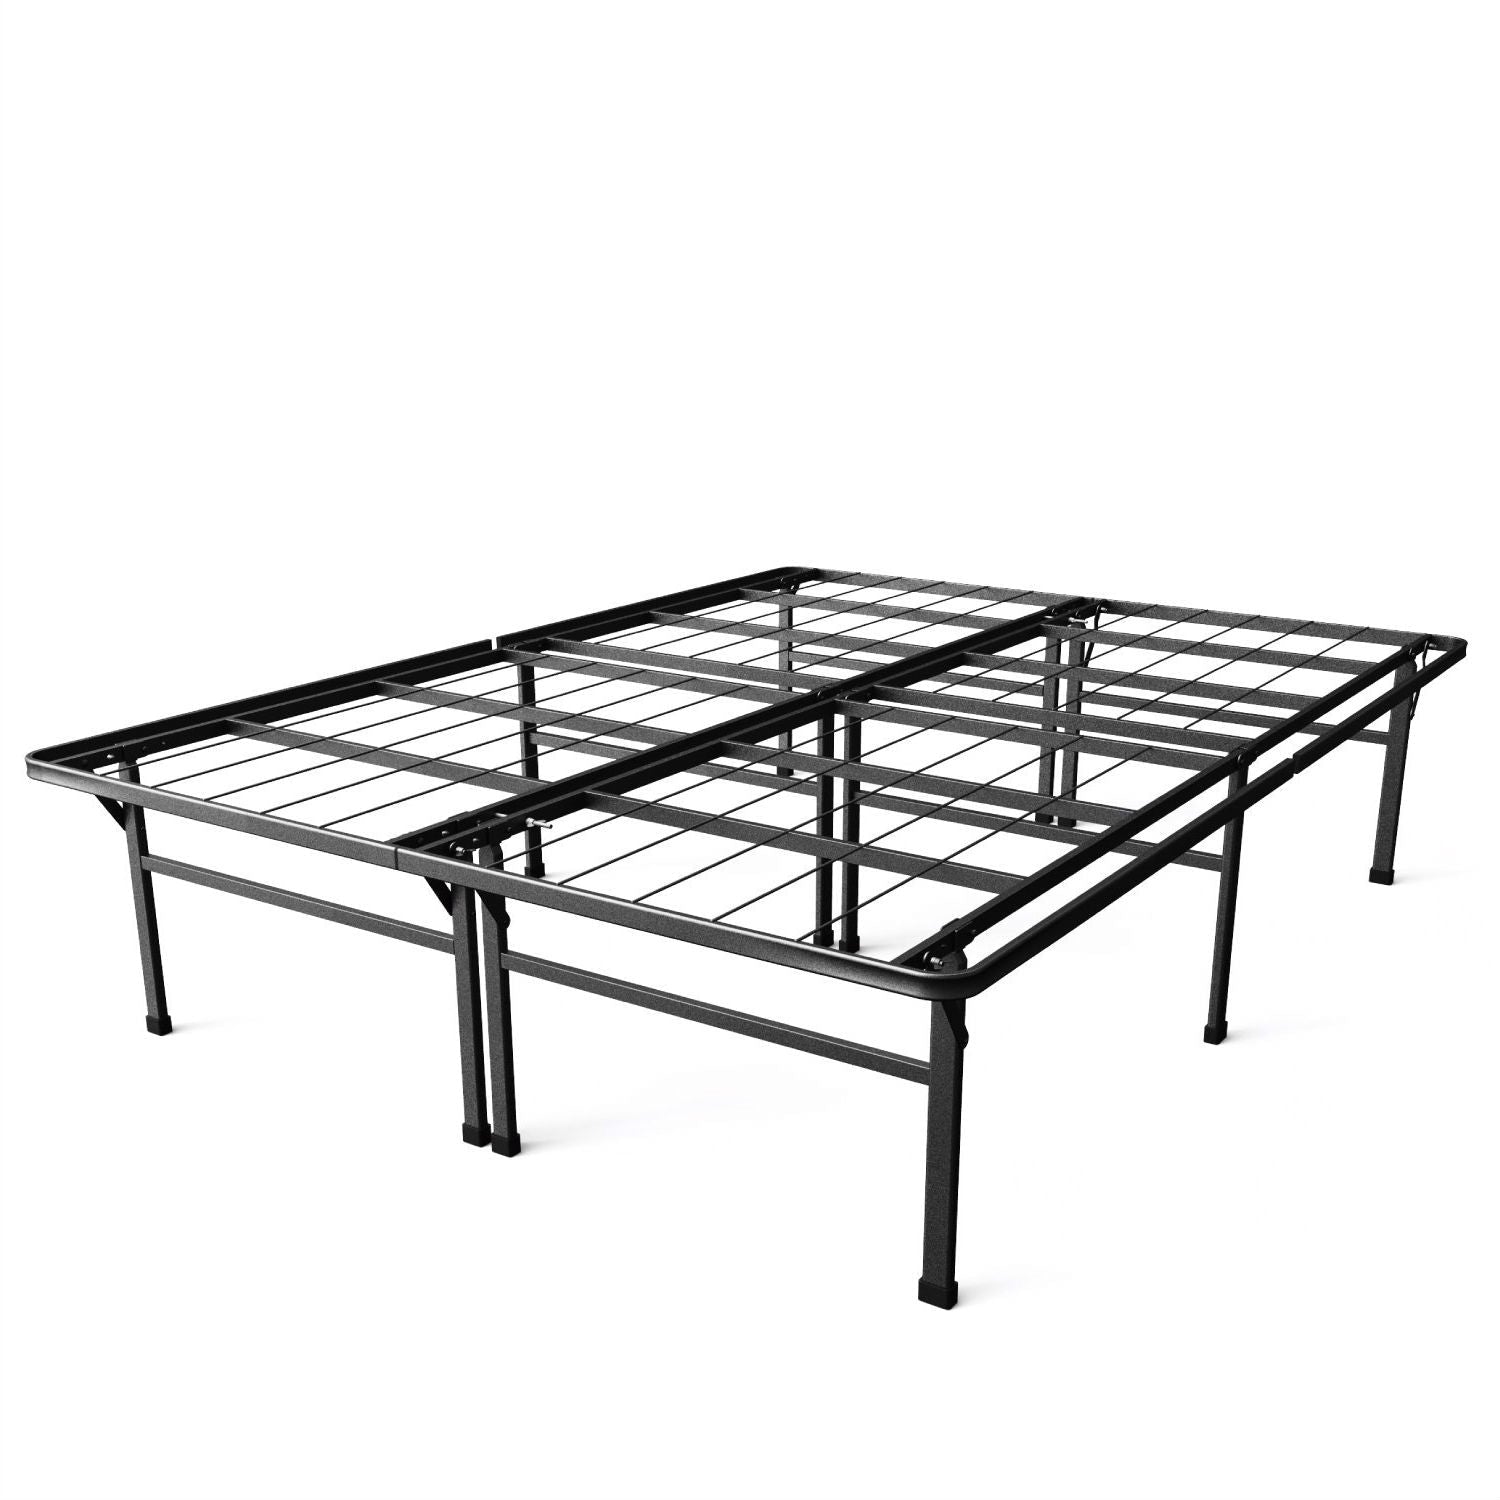 Bedroom > Bed Frames > Platform Beds - Full Size 18-inch High Rise Folding Metal Platform Bed Frame